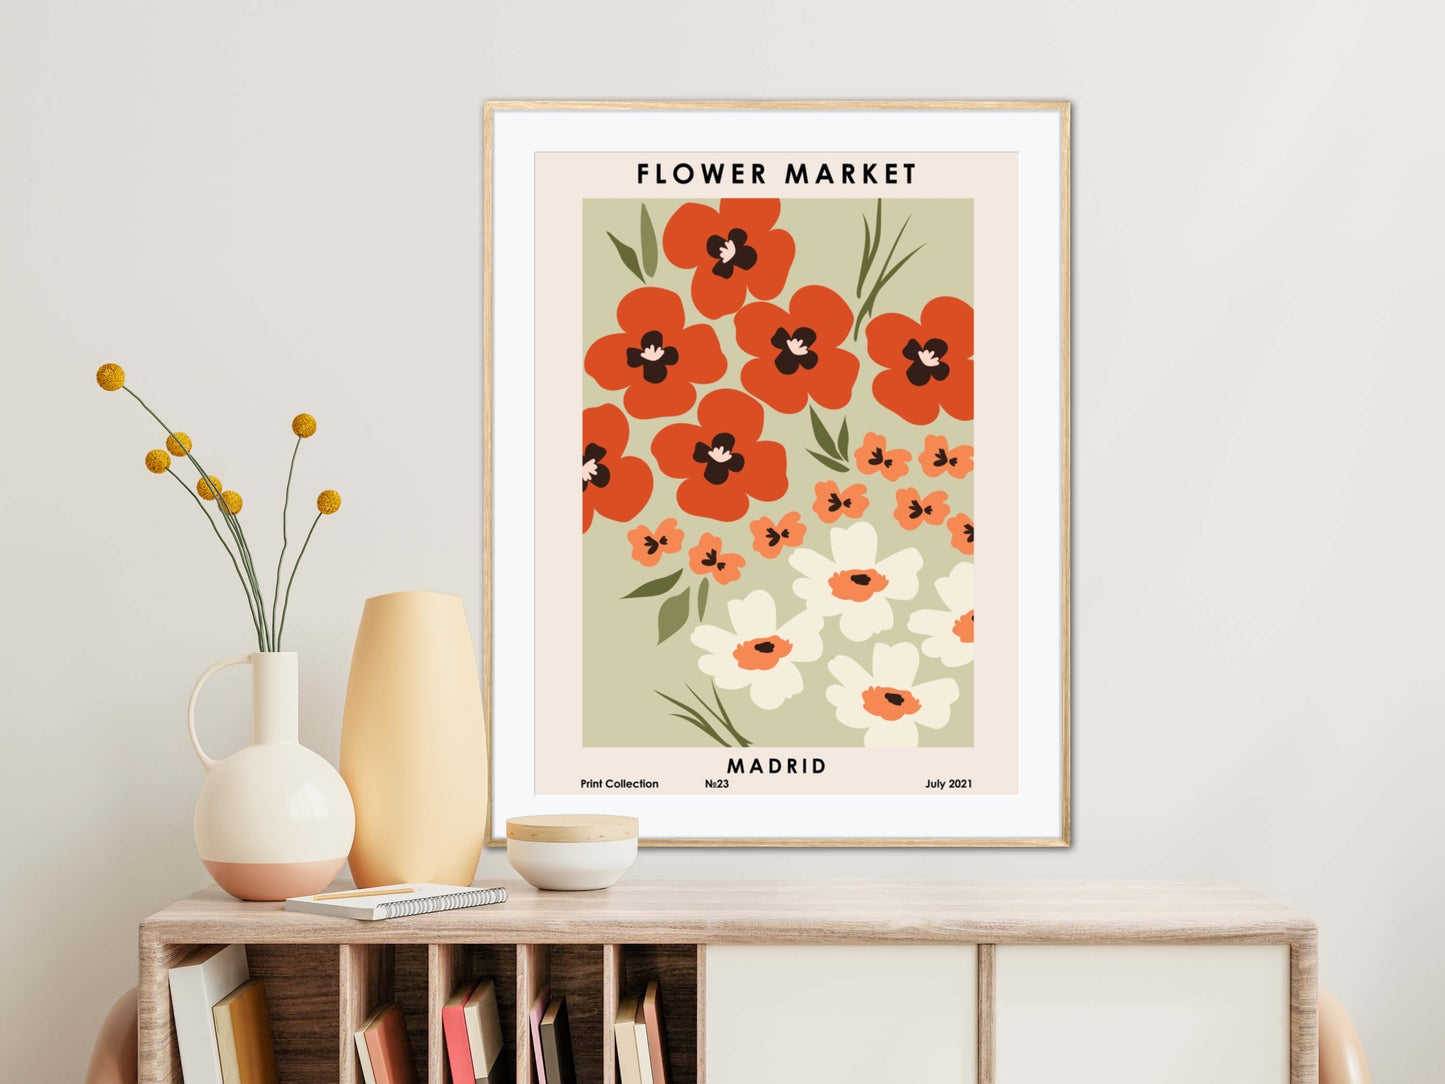 Madrid Flower Market Print Poster